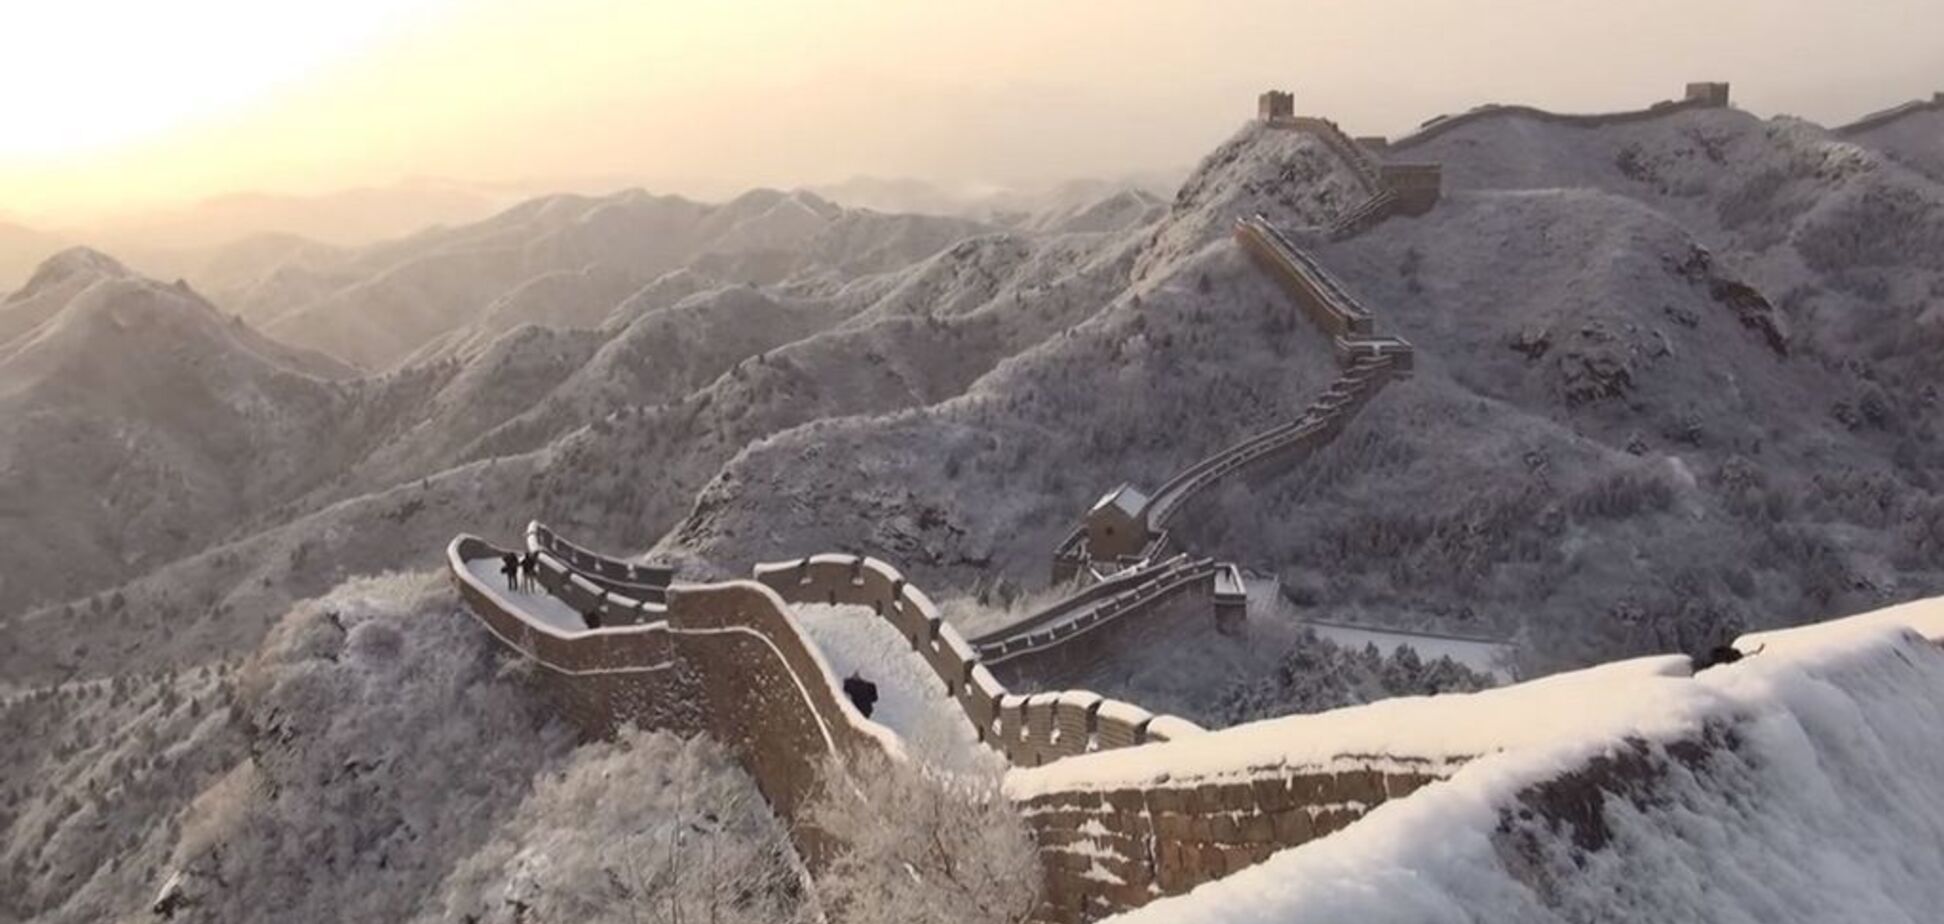 Великая Китайская стена обледенела и превратилась в горку: видео